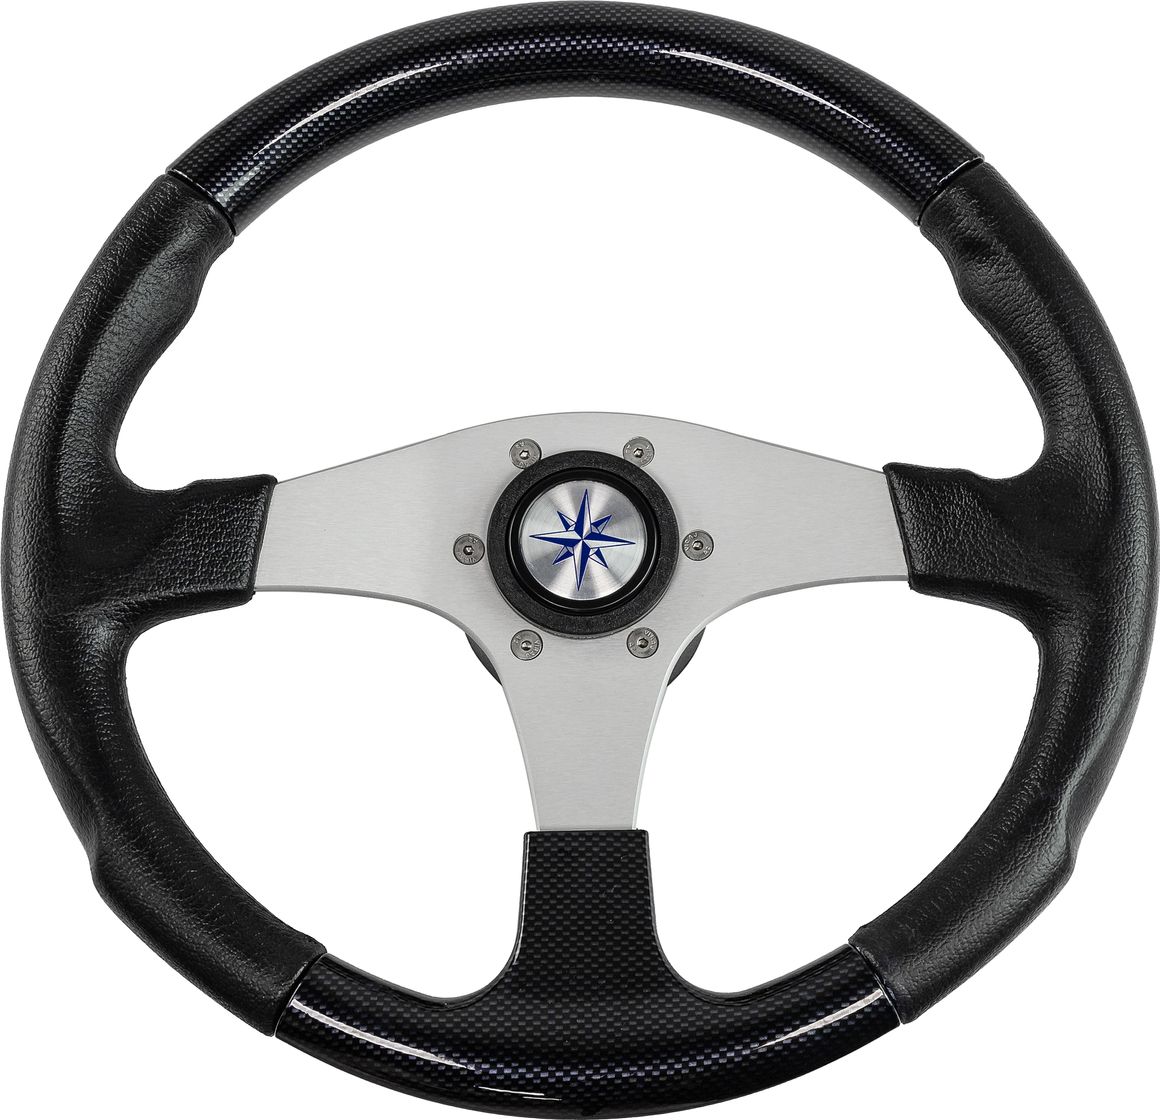 Рулевое колесо EVO MARINE 2 обод черный, спицы серебряные д. 355 мм VN850001-35 рулевое колесо manta обод белый спицы серебряные д 355 мм vn70551 08